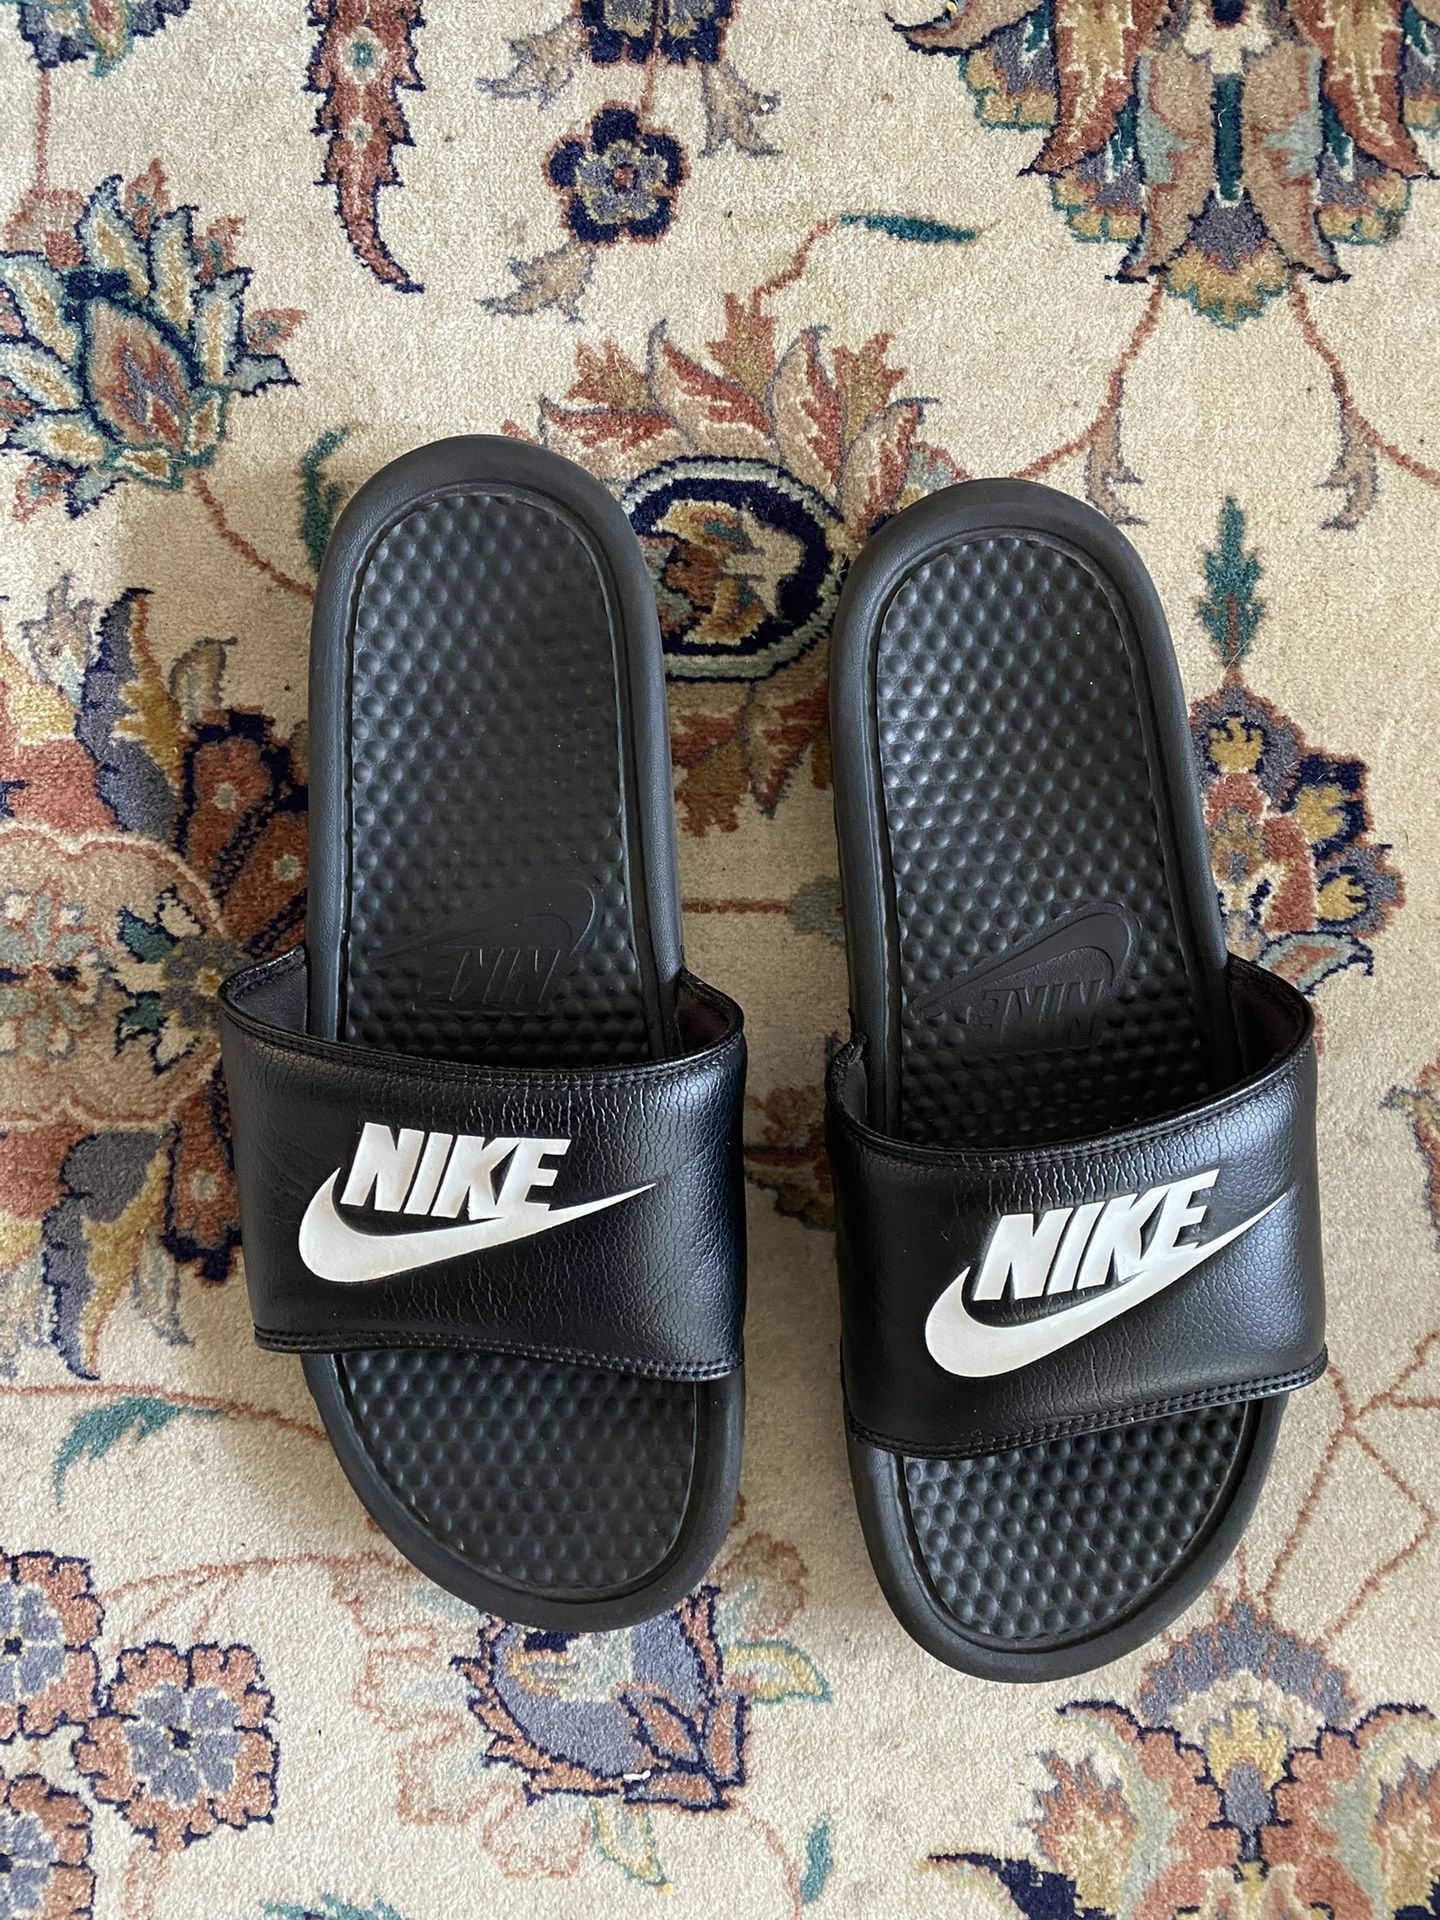 Nike Slides Sandals 